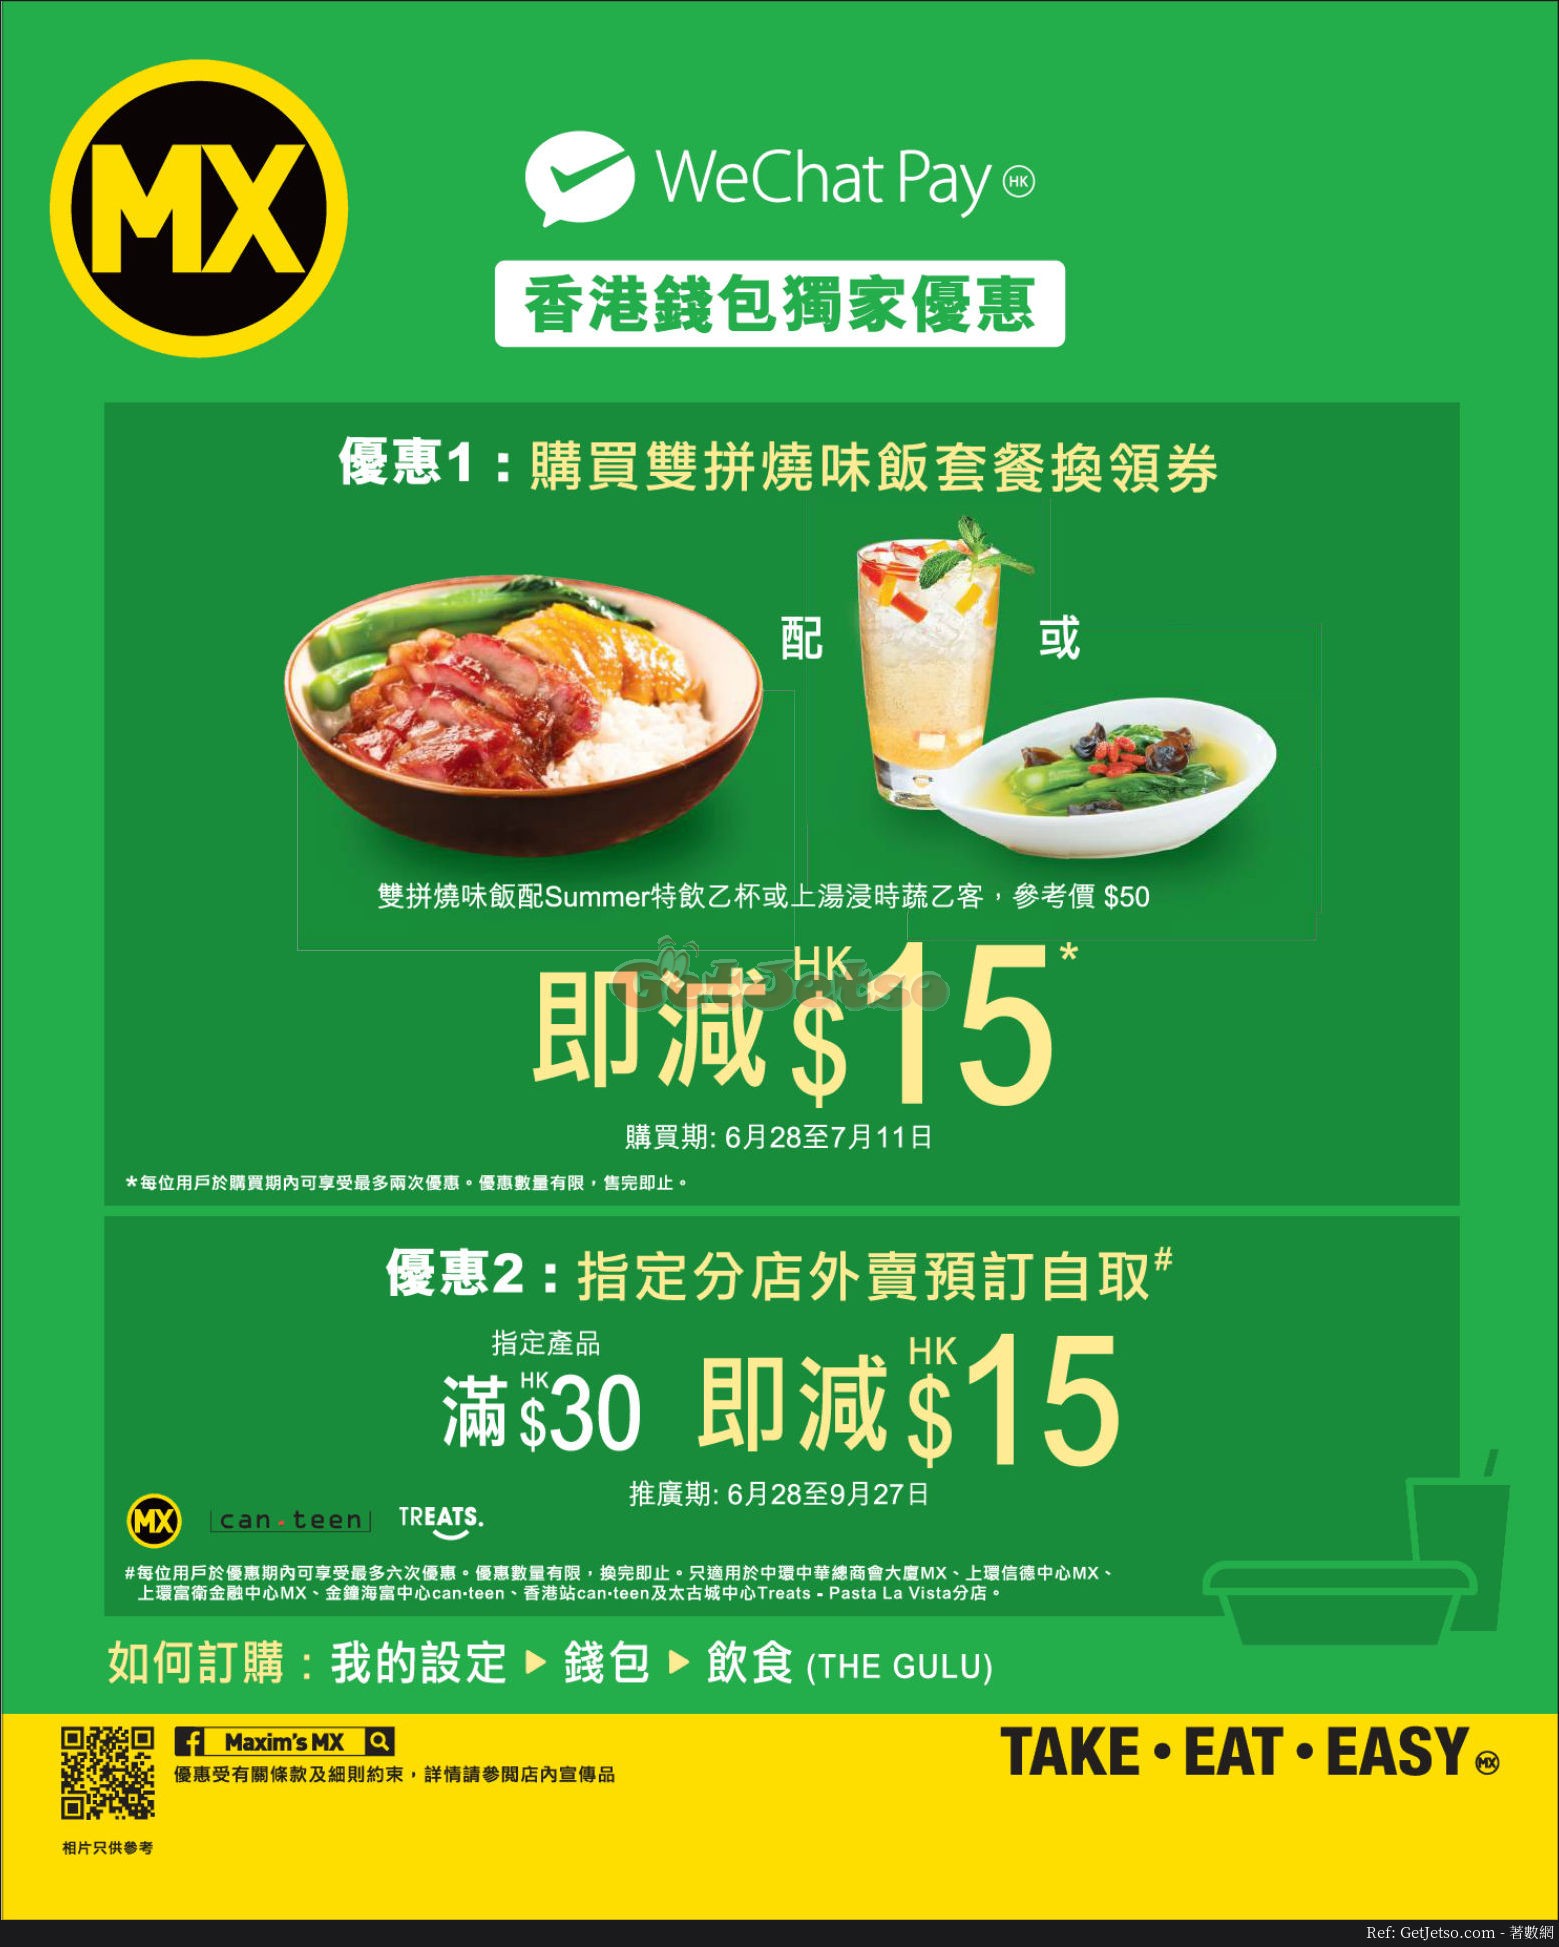 美心MX 買滿即減優惠@WeChat Pay(至18年9月27日)圖片1